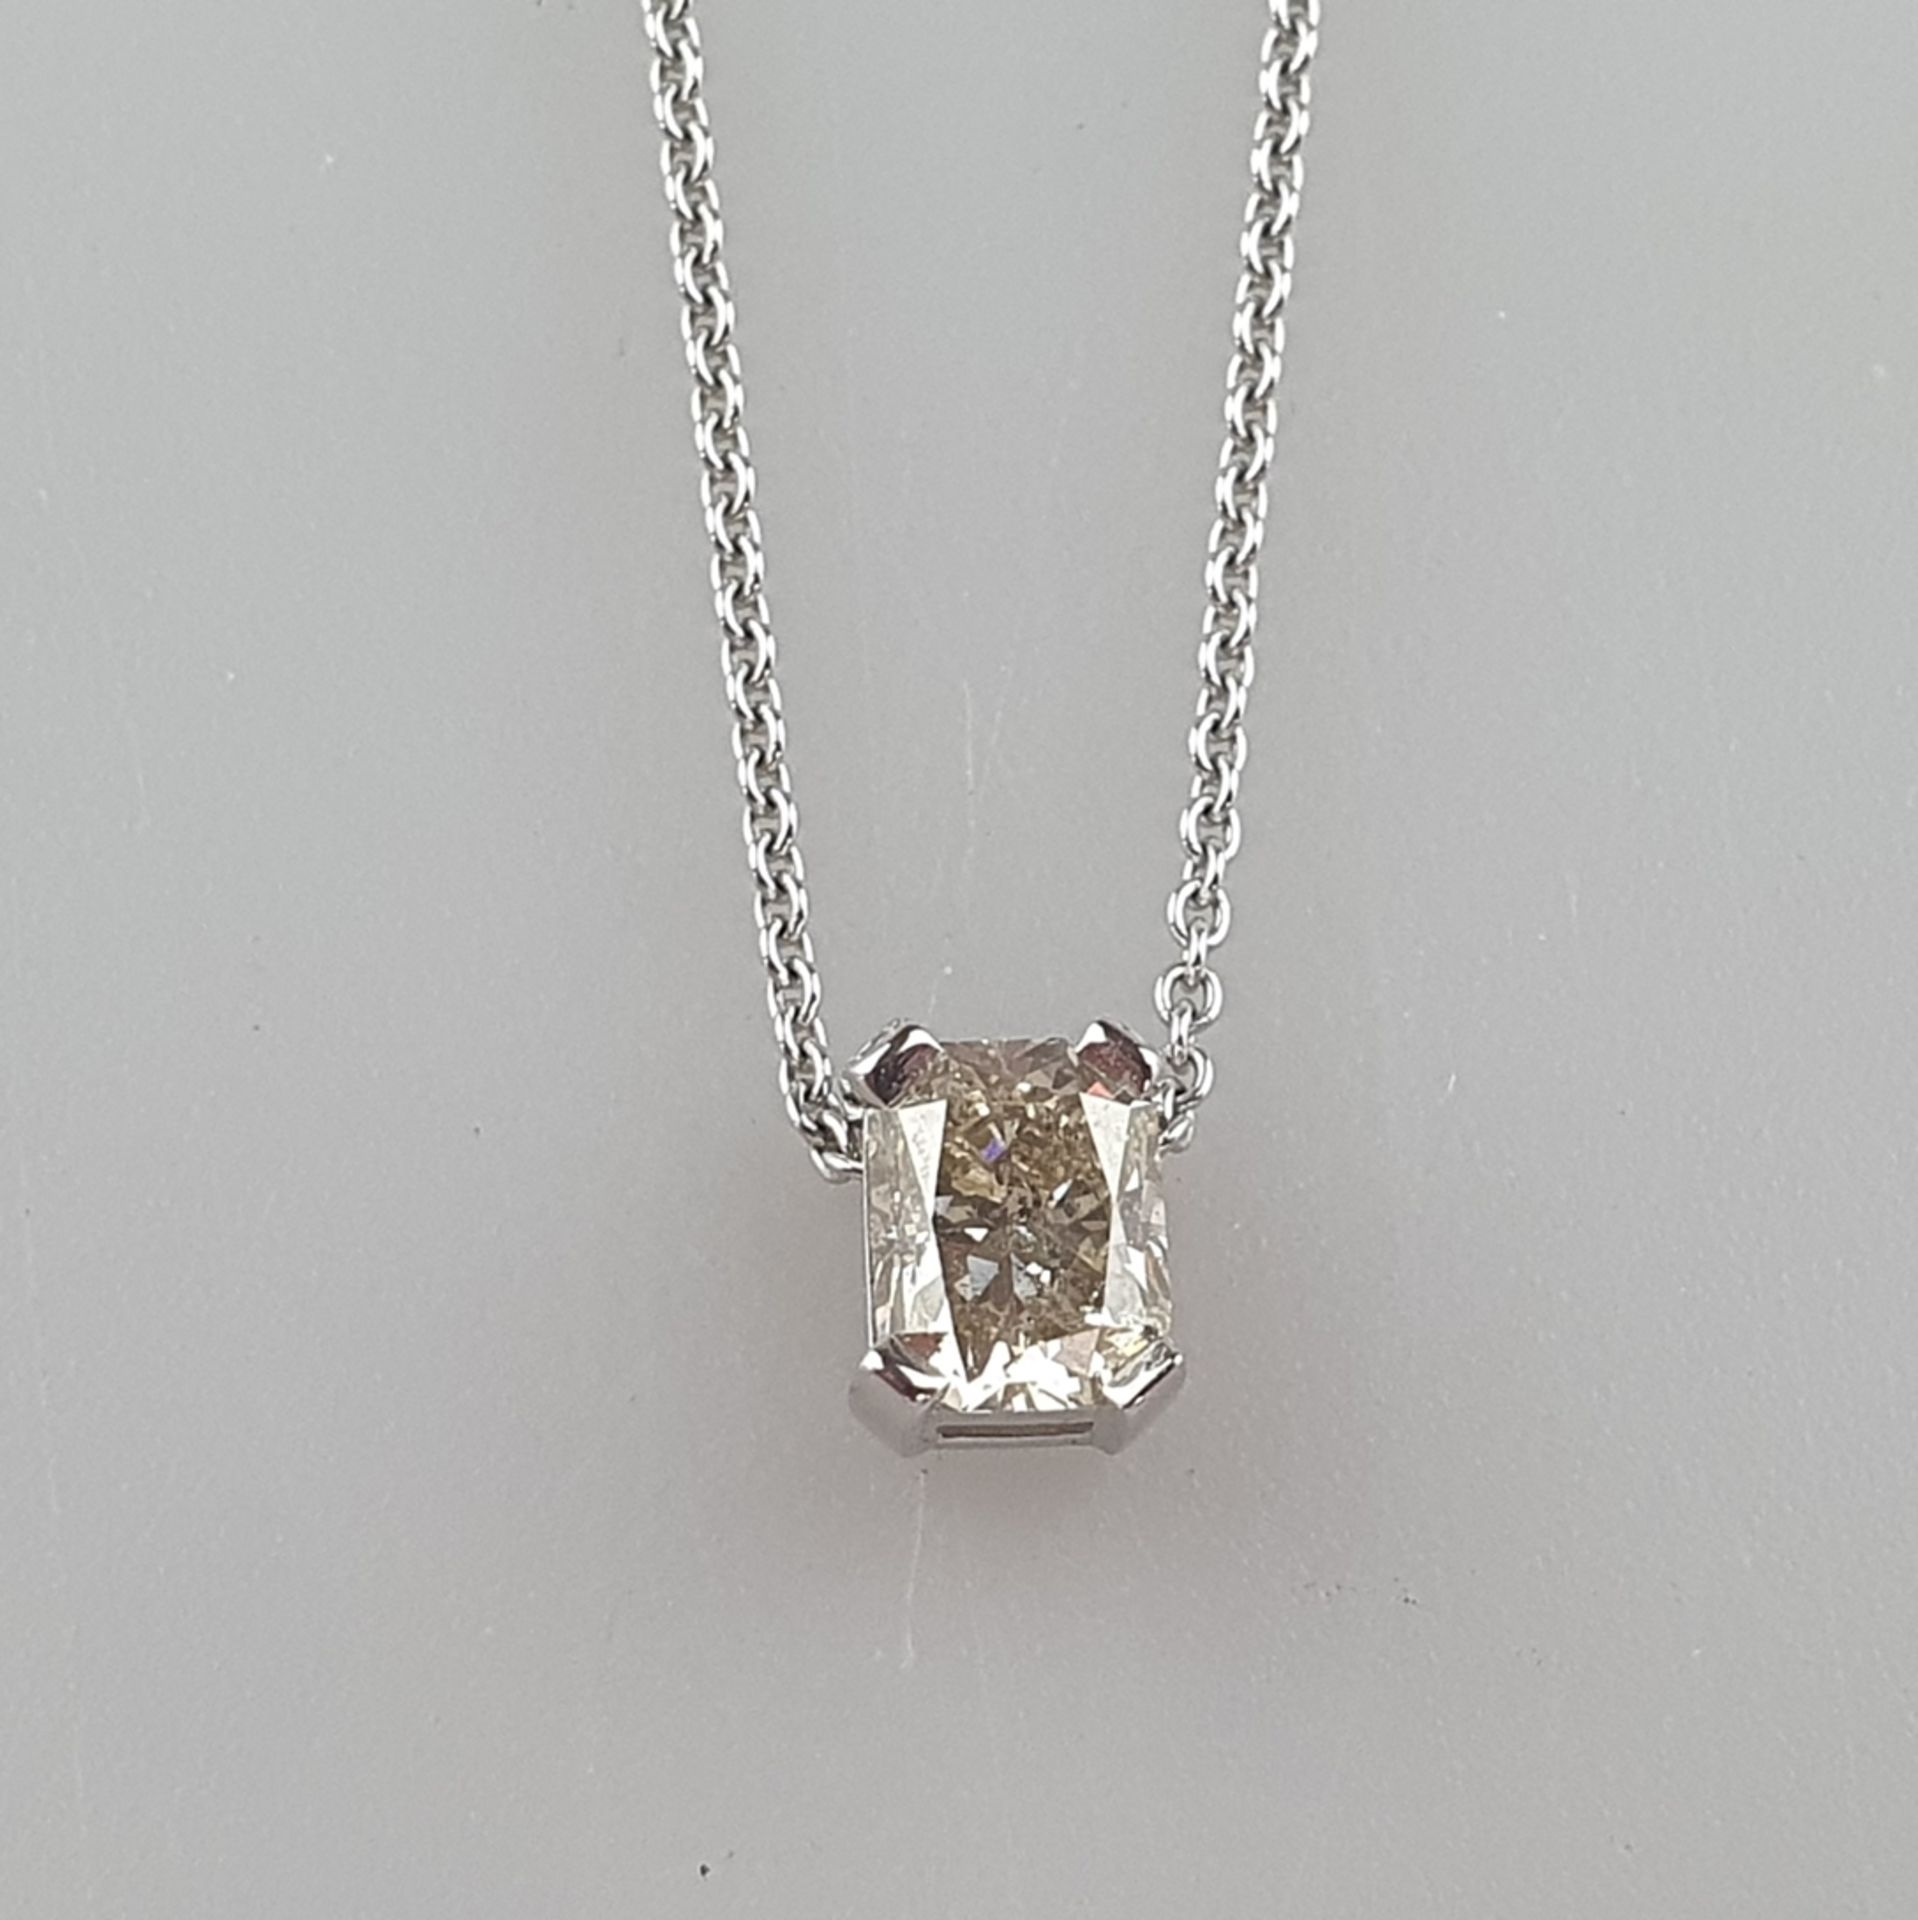 Diamantanhänger von über 1 Karat an zarter Kette - Weißgold 750/000, gestempelt, rechteckiger Anhän